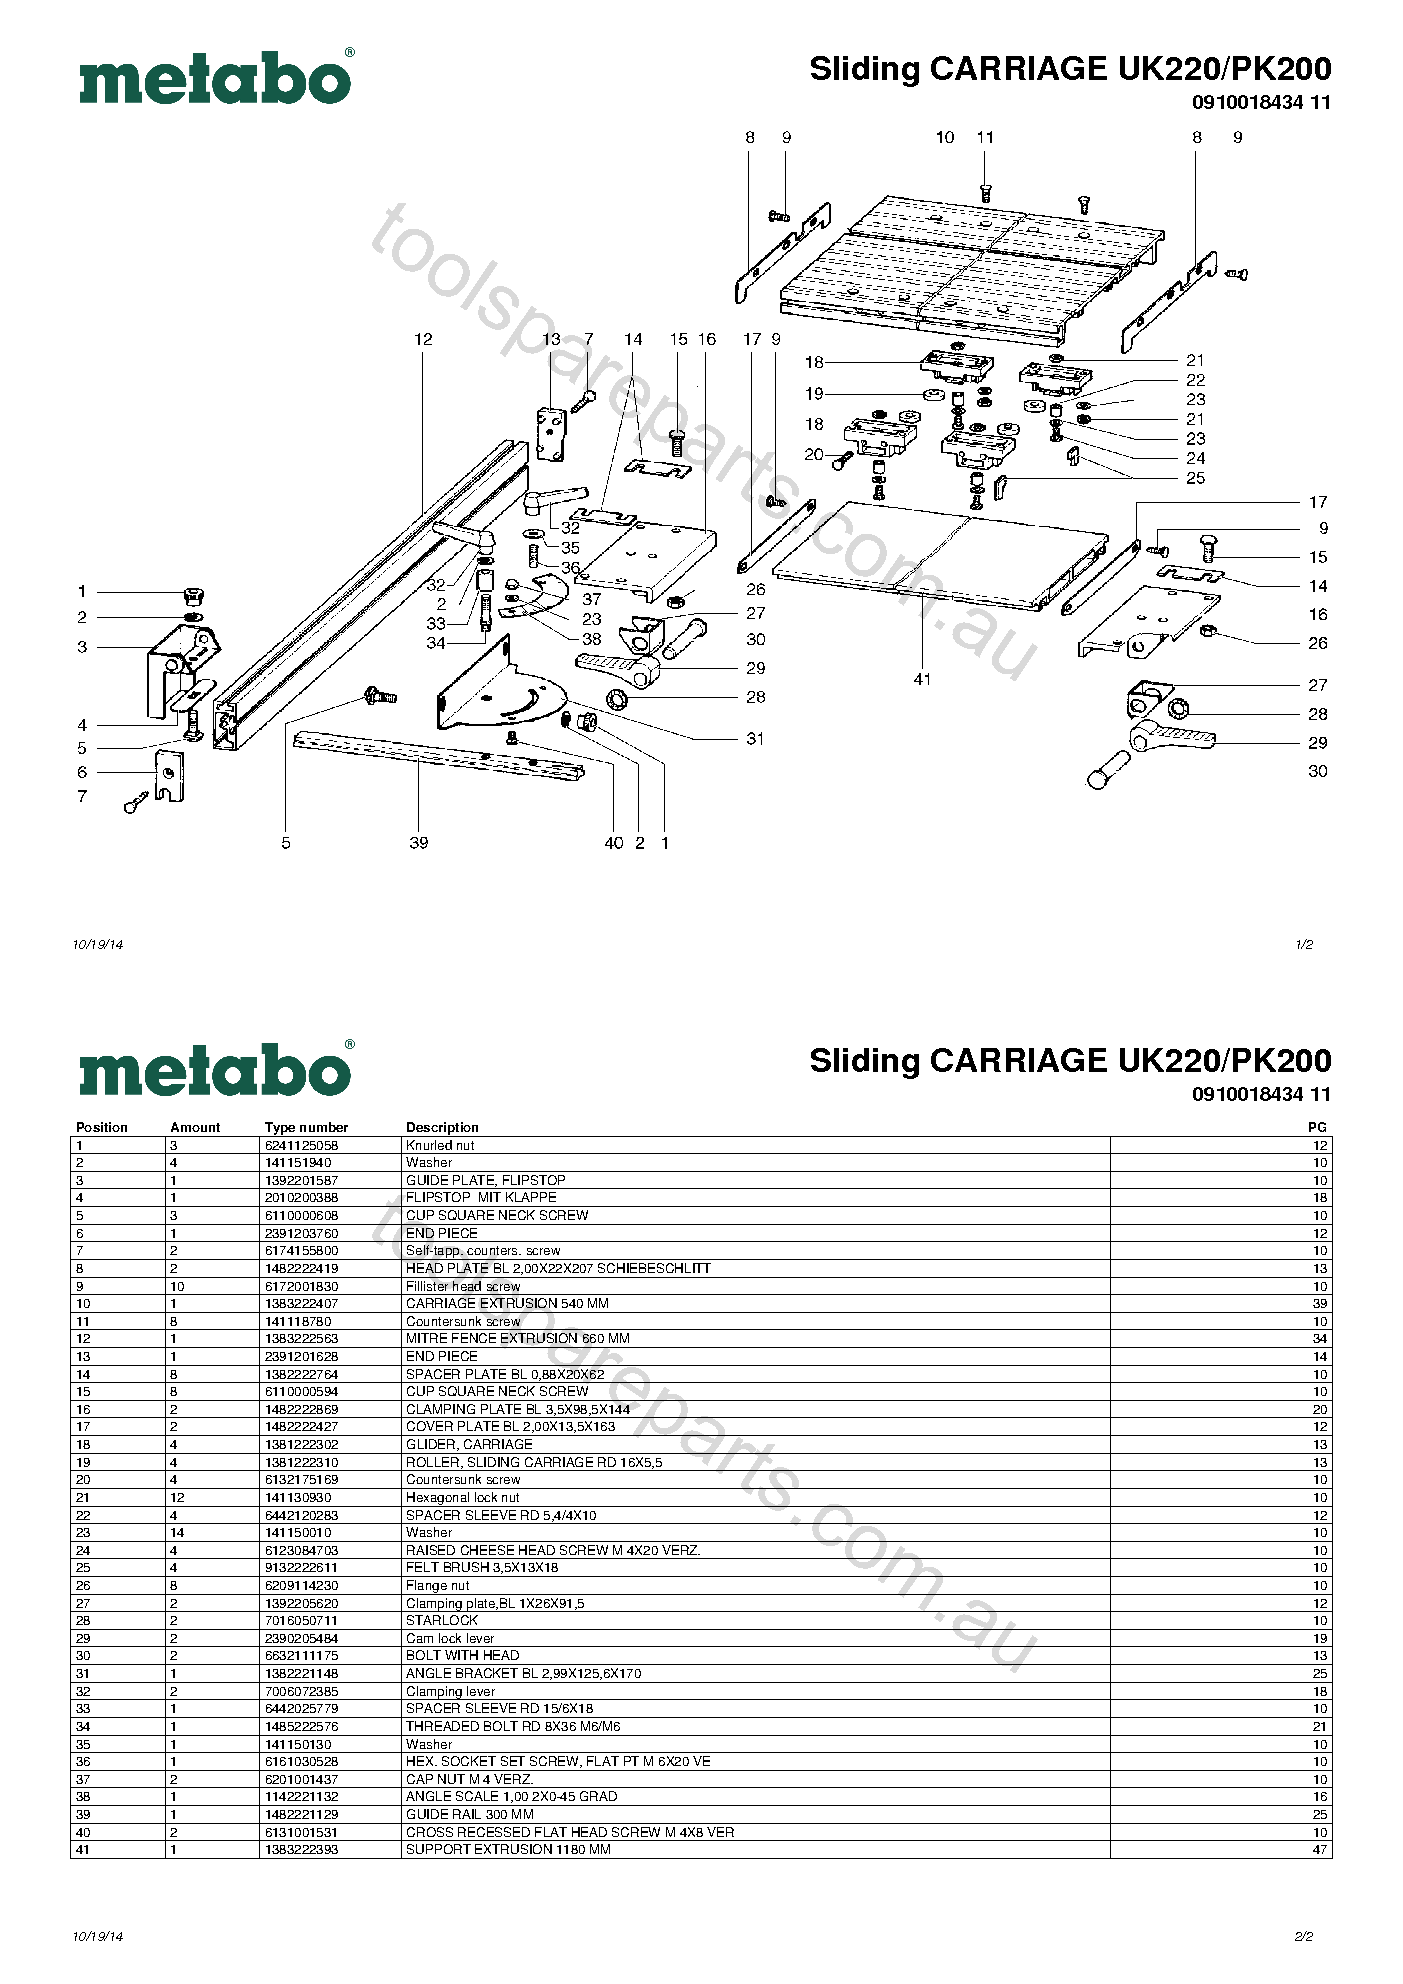 Metabo Sliding CARRIAGE UK220/PK200 0910018434 11  Diagram 1